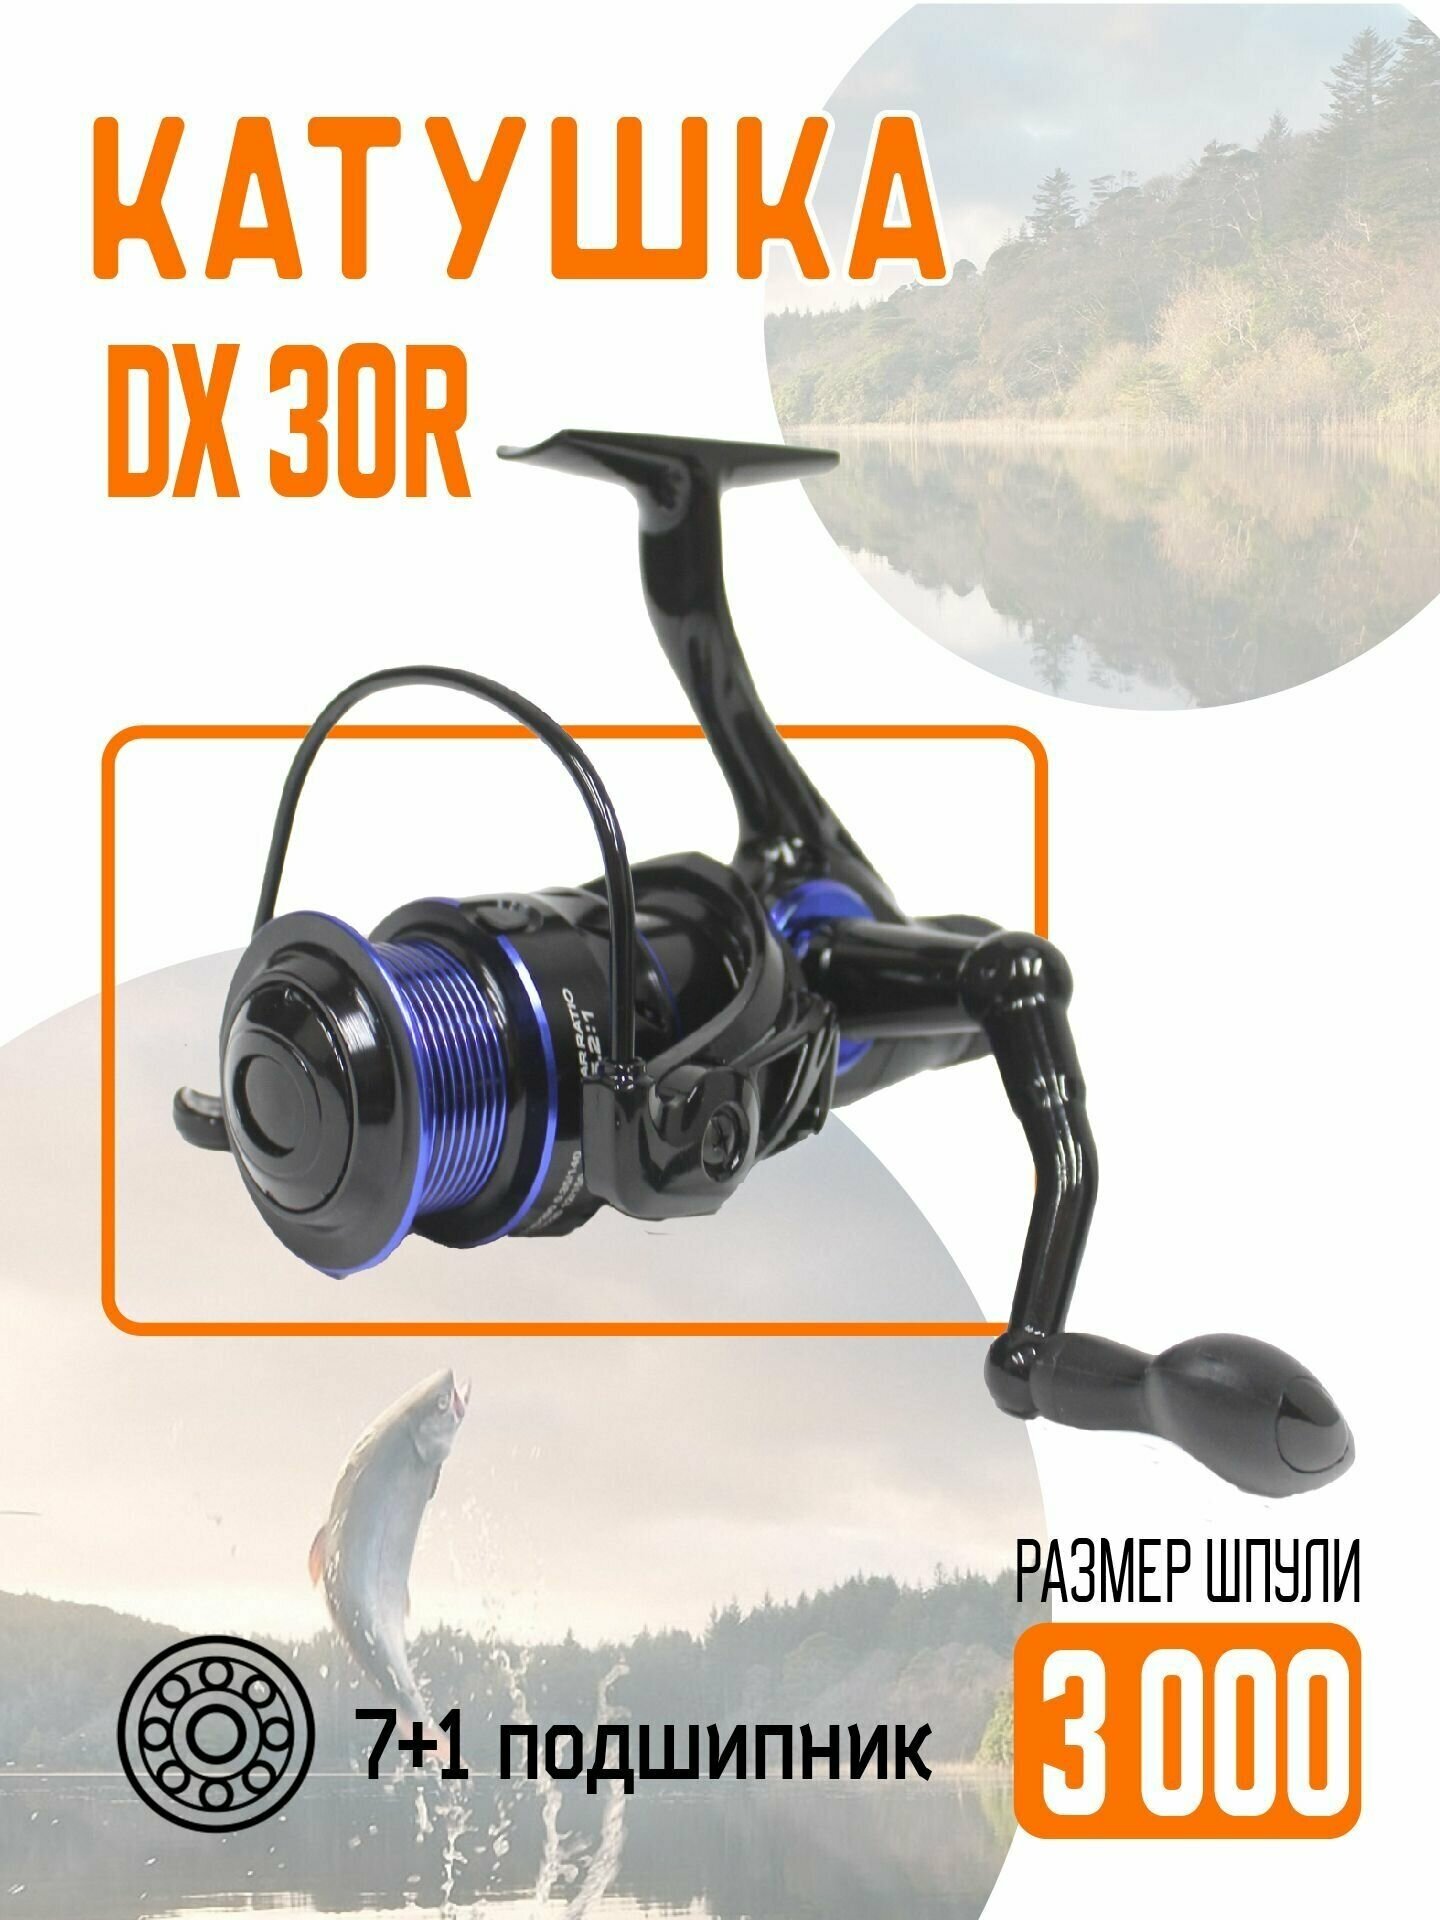 Катушка безынерционная DX-30R металлическая для рыбалки с удочки или спиннинга с запасной пластиковой шпулей.